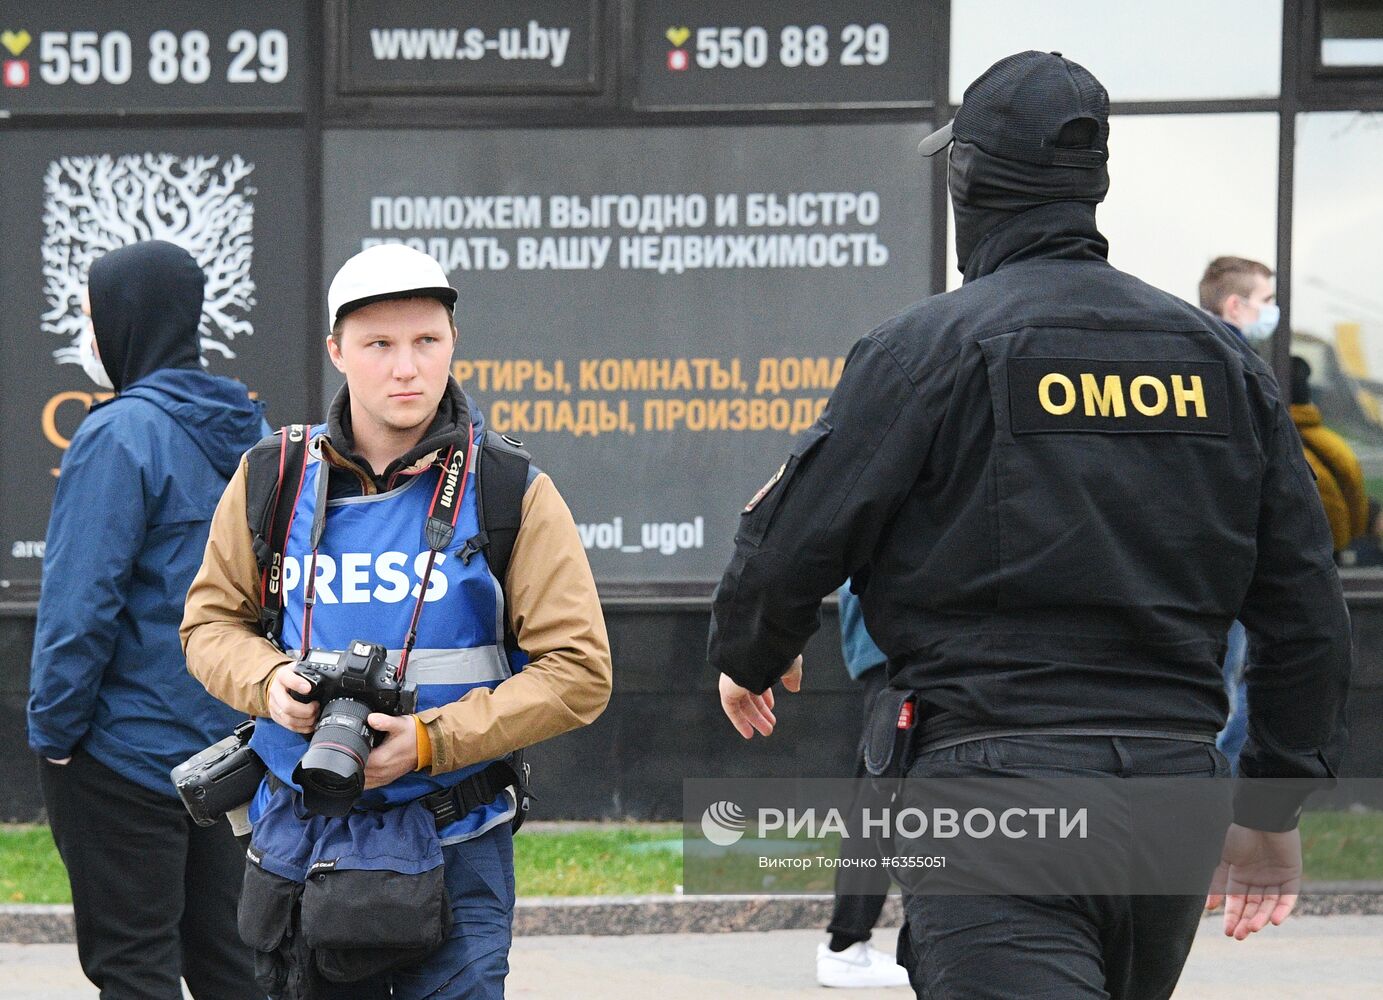 Несанкционированная акция протеста оппозиции в Минске